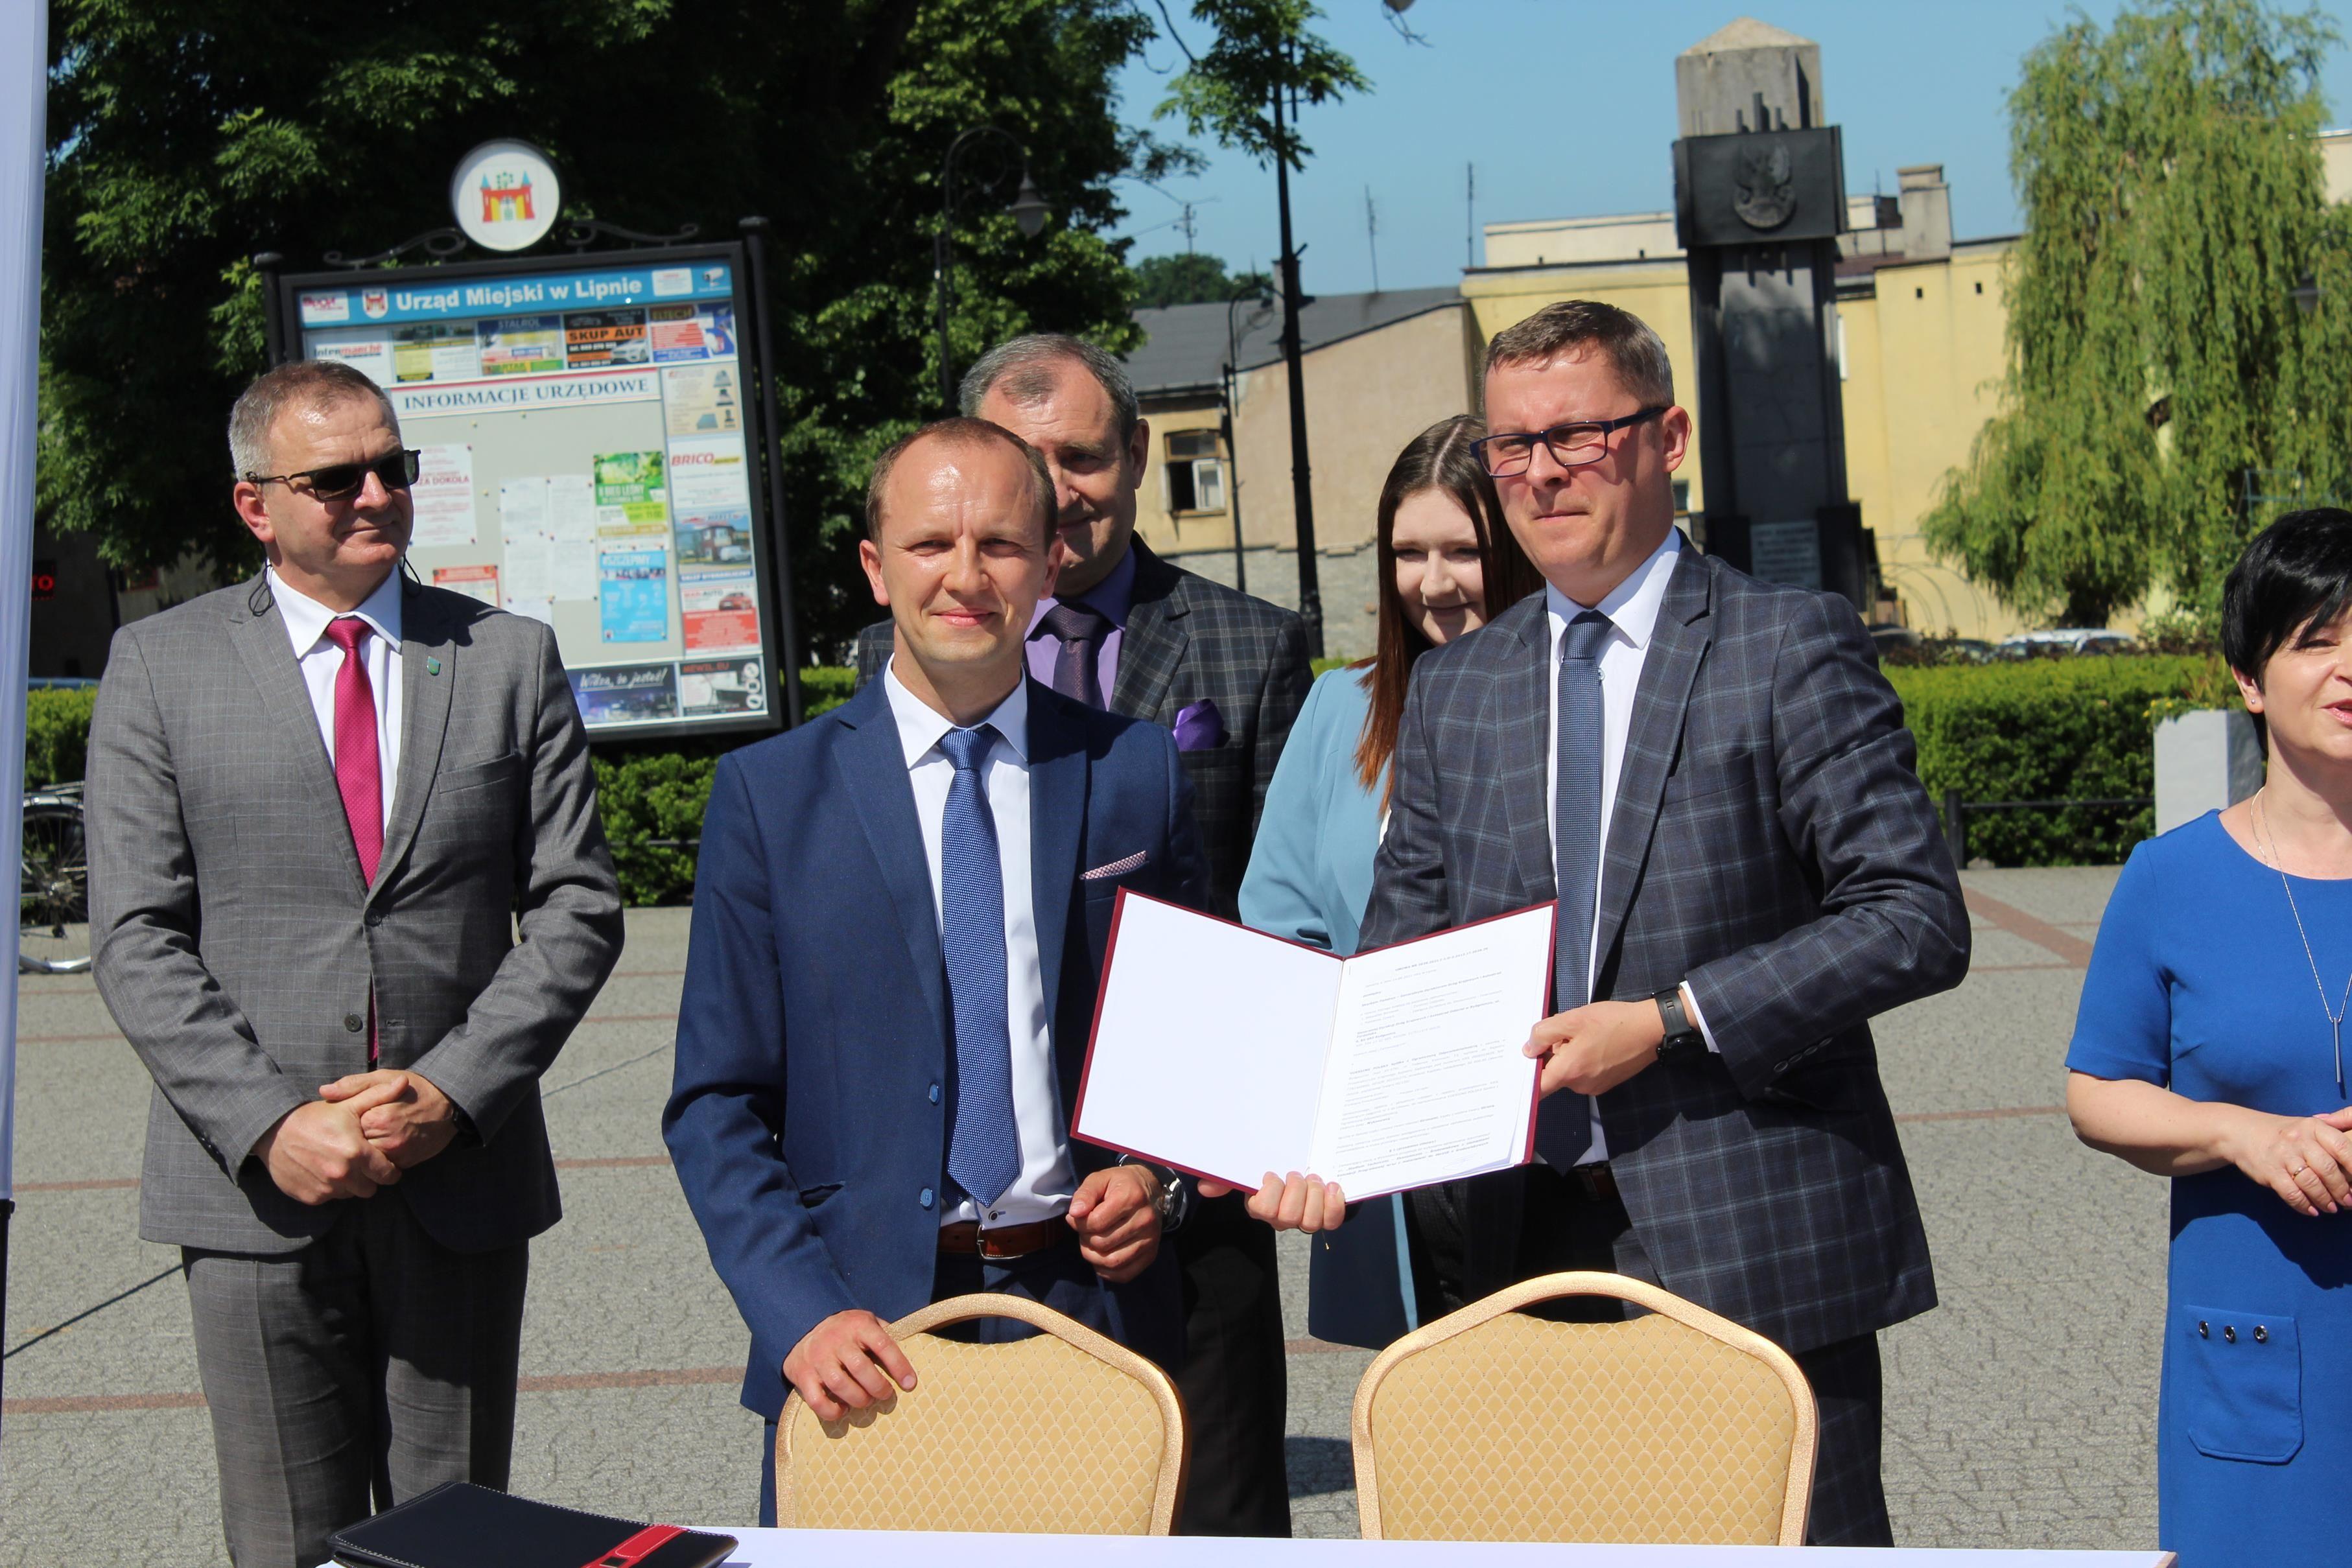 Podpisanie umowy na dokumentację obwodnicy Lipna przed lipnowskim ratuszem - kliknięcie spowoduje powiększenie obrazka